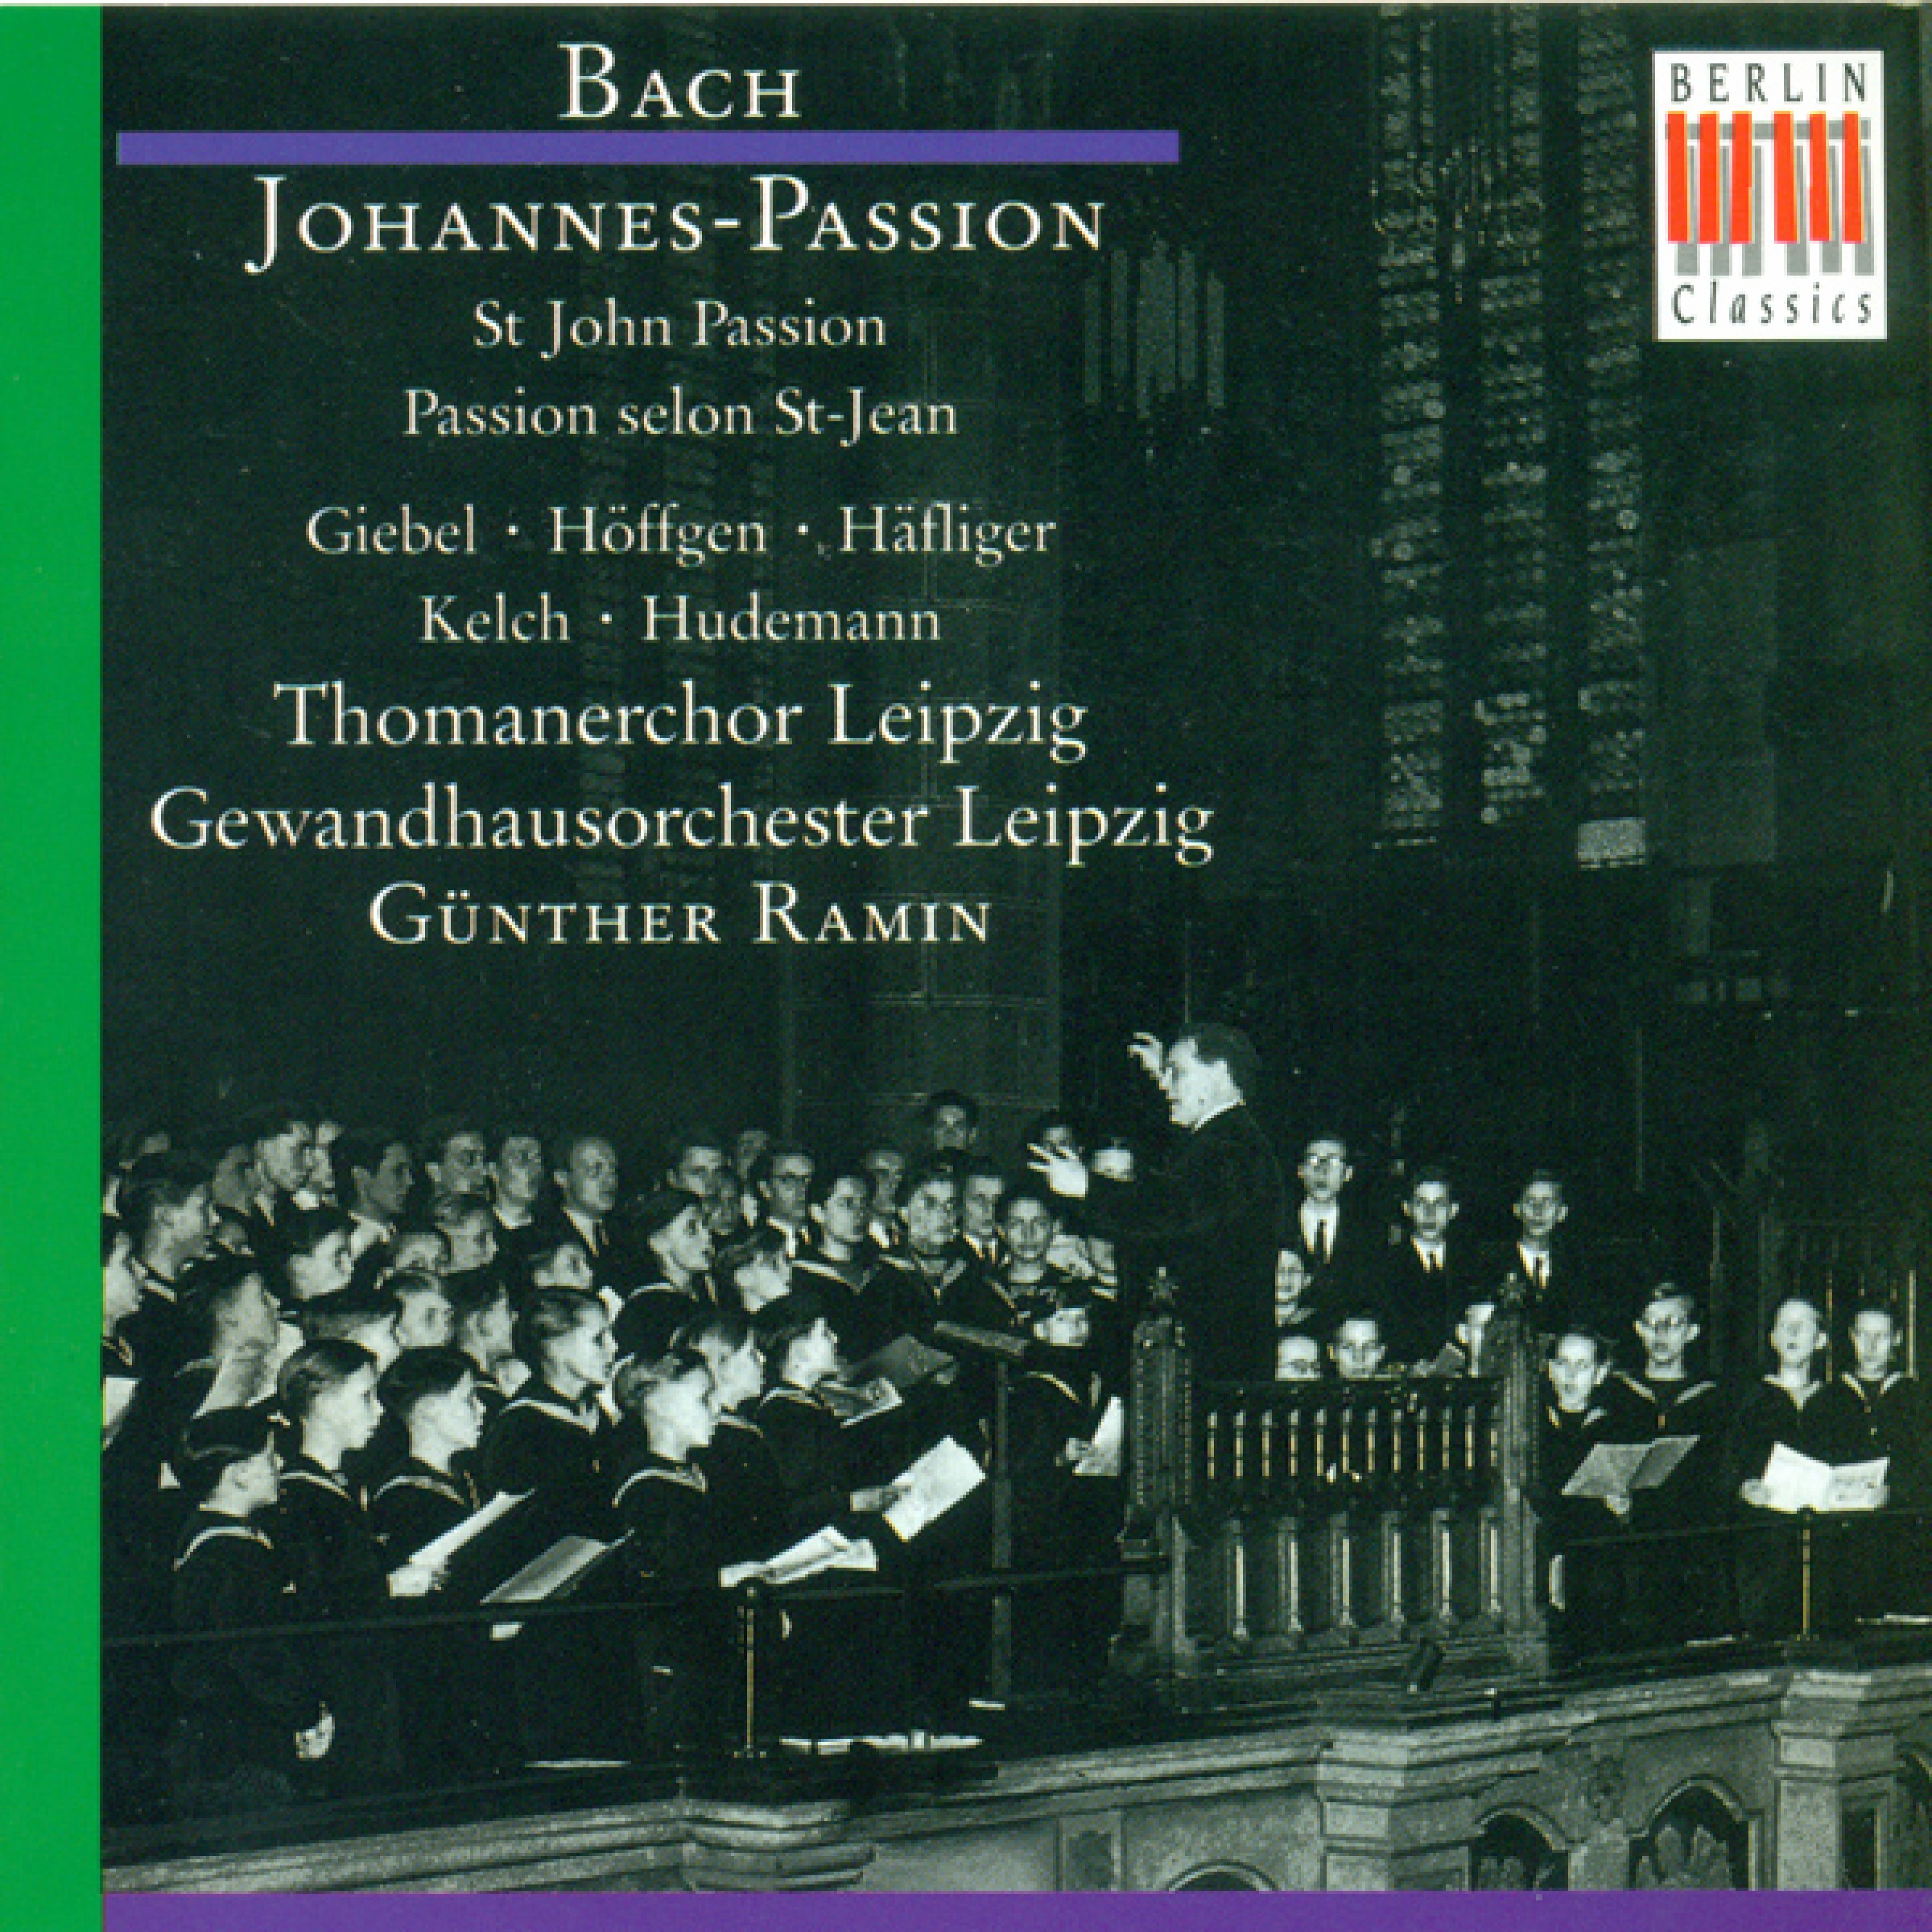 Johannes-Passion, BWV 245: Part II - "Ruht wohl, ihr heiligen Gebeine"